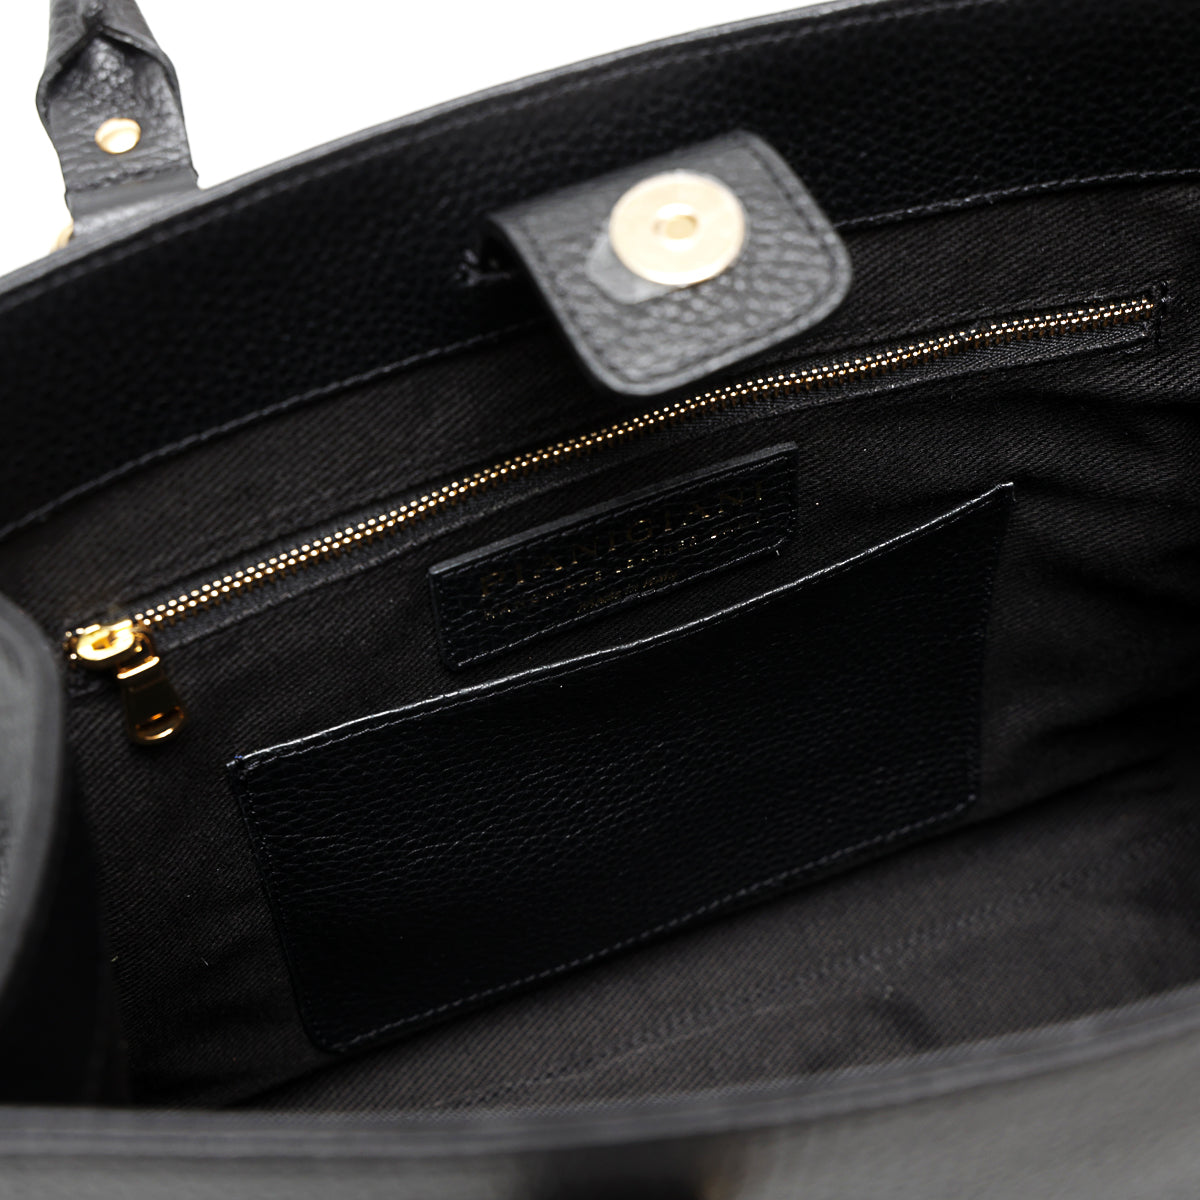 Lady bag S borsa da donna a mano con tracolla in pelle martellata nera fatta da Pianigiani Bags